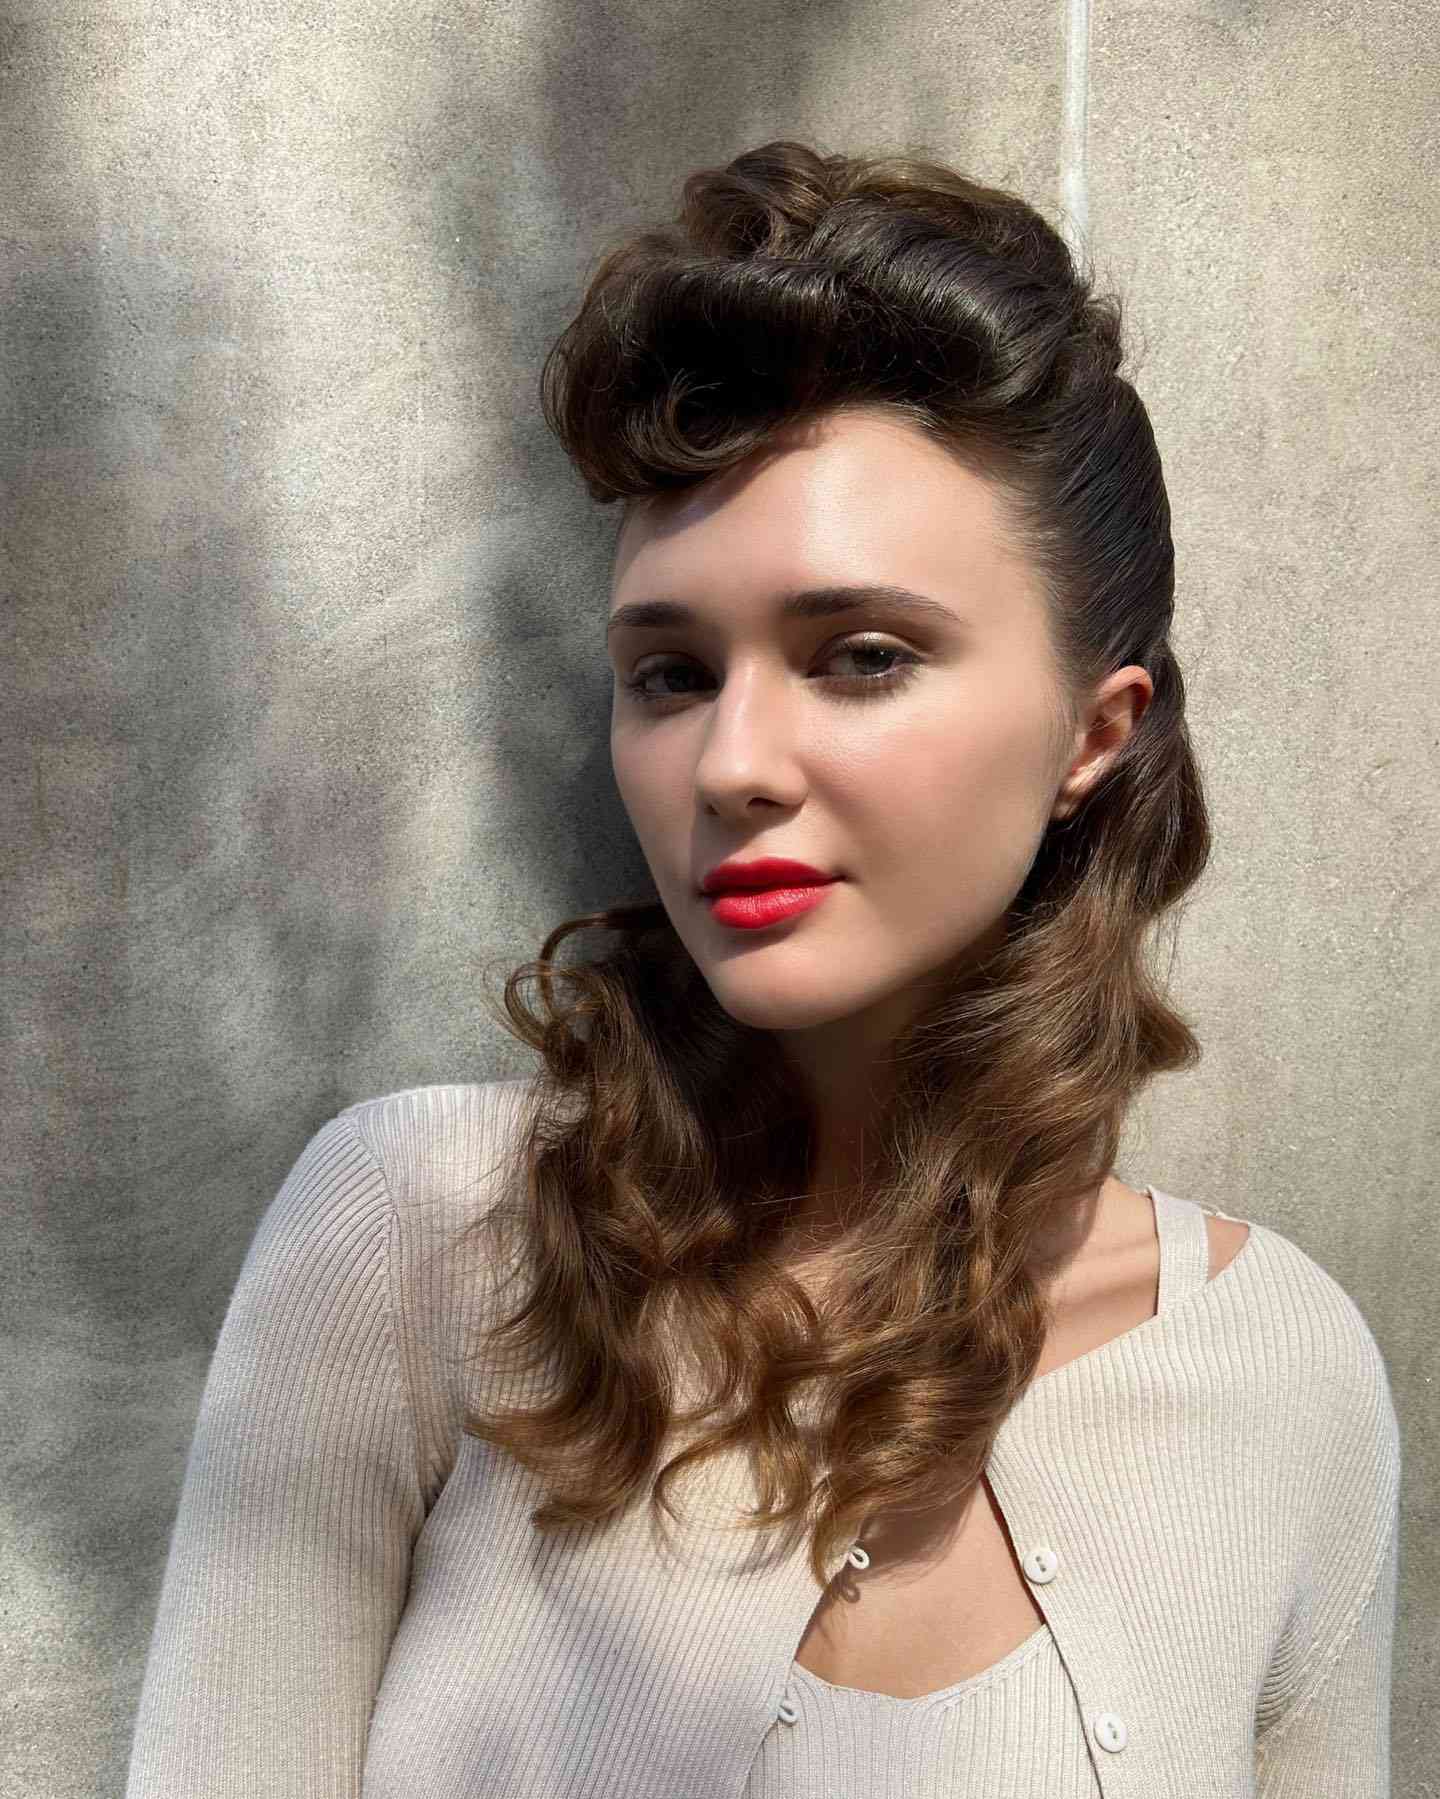 Uma mulher com um penteado encaracolado no estilo da década de 1940.